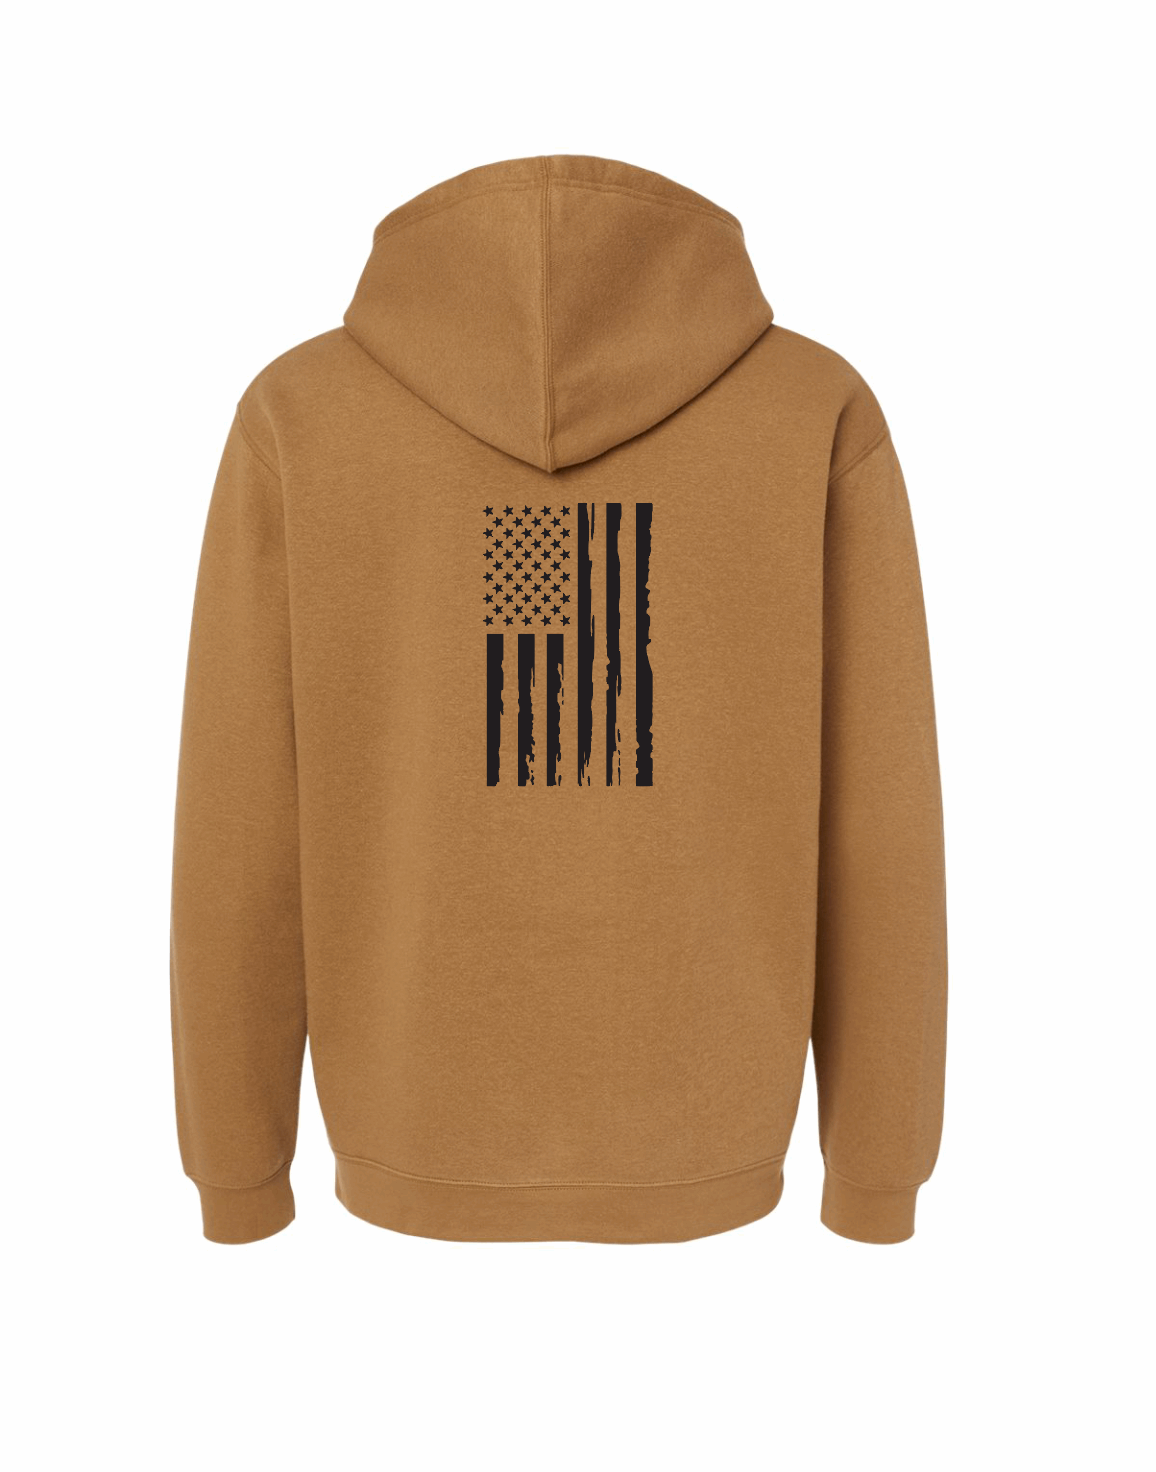 Elevated Fleece Hooded Sweatshirt / Coyote Brown / Salt and Sand / Patriotic